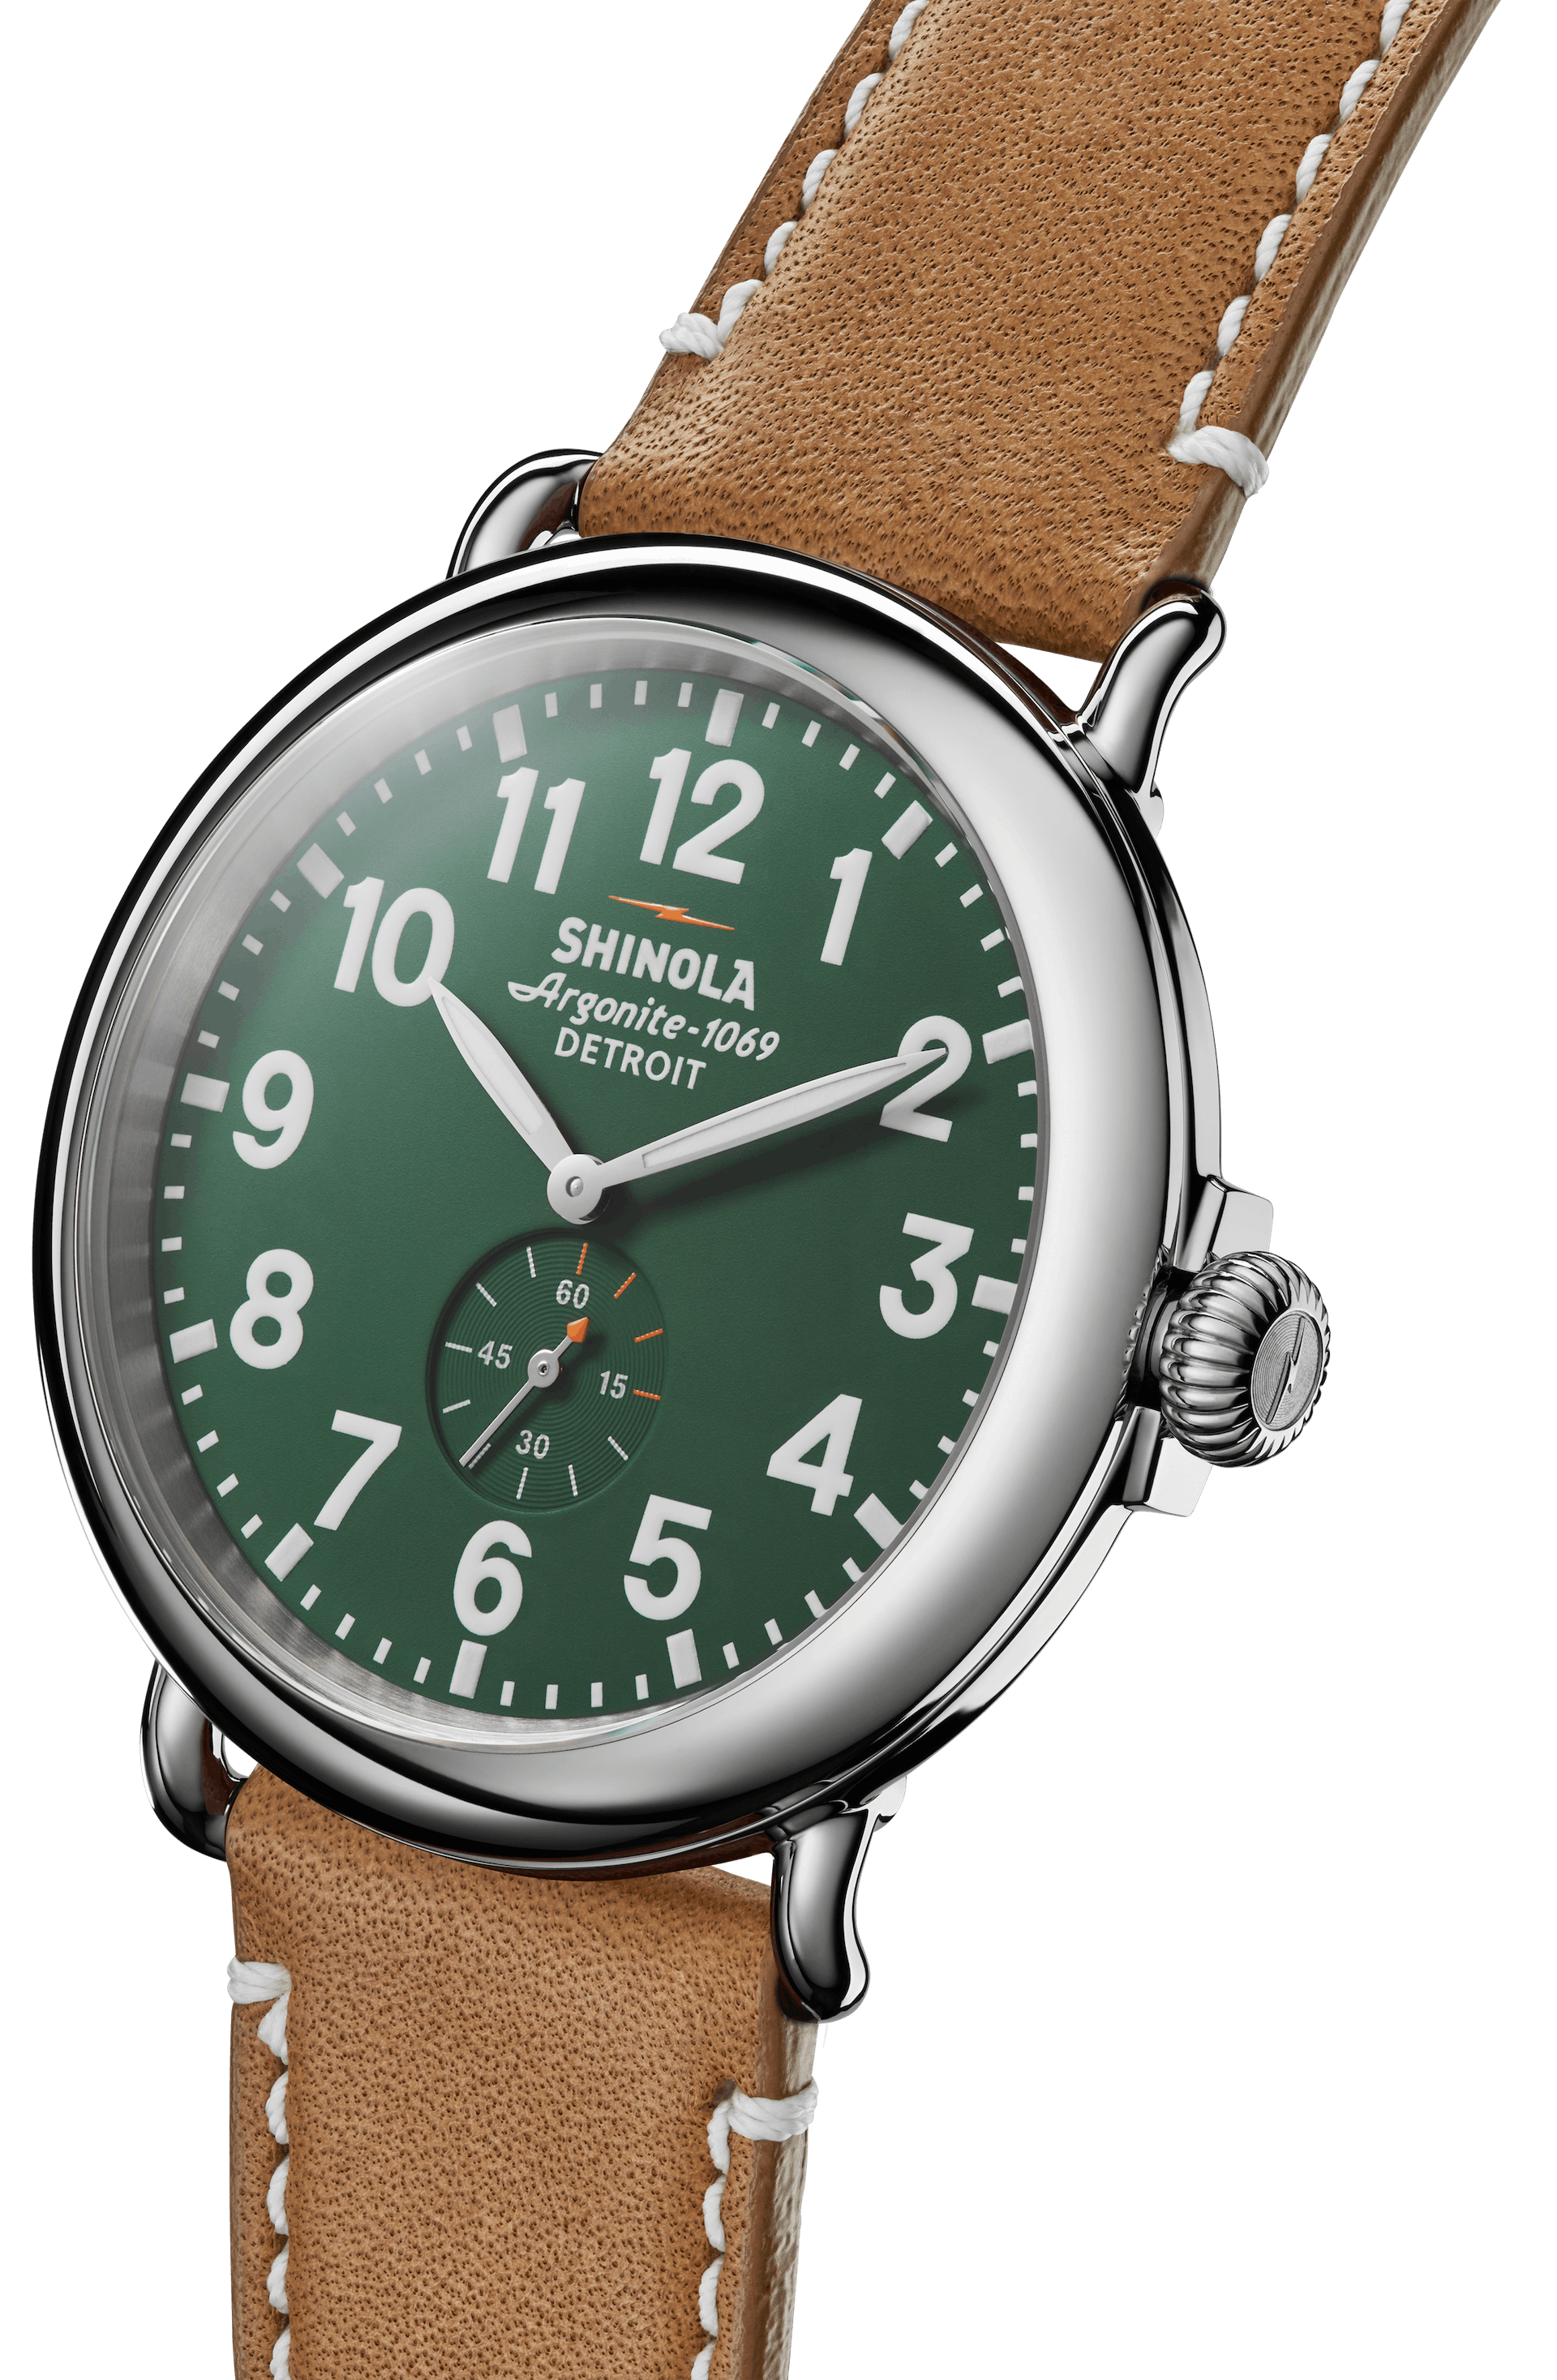 Shinola Travel Watch Case